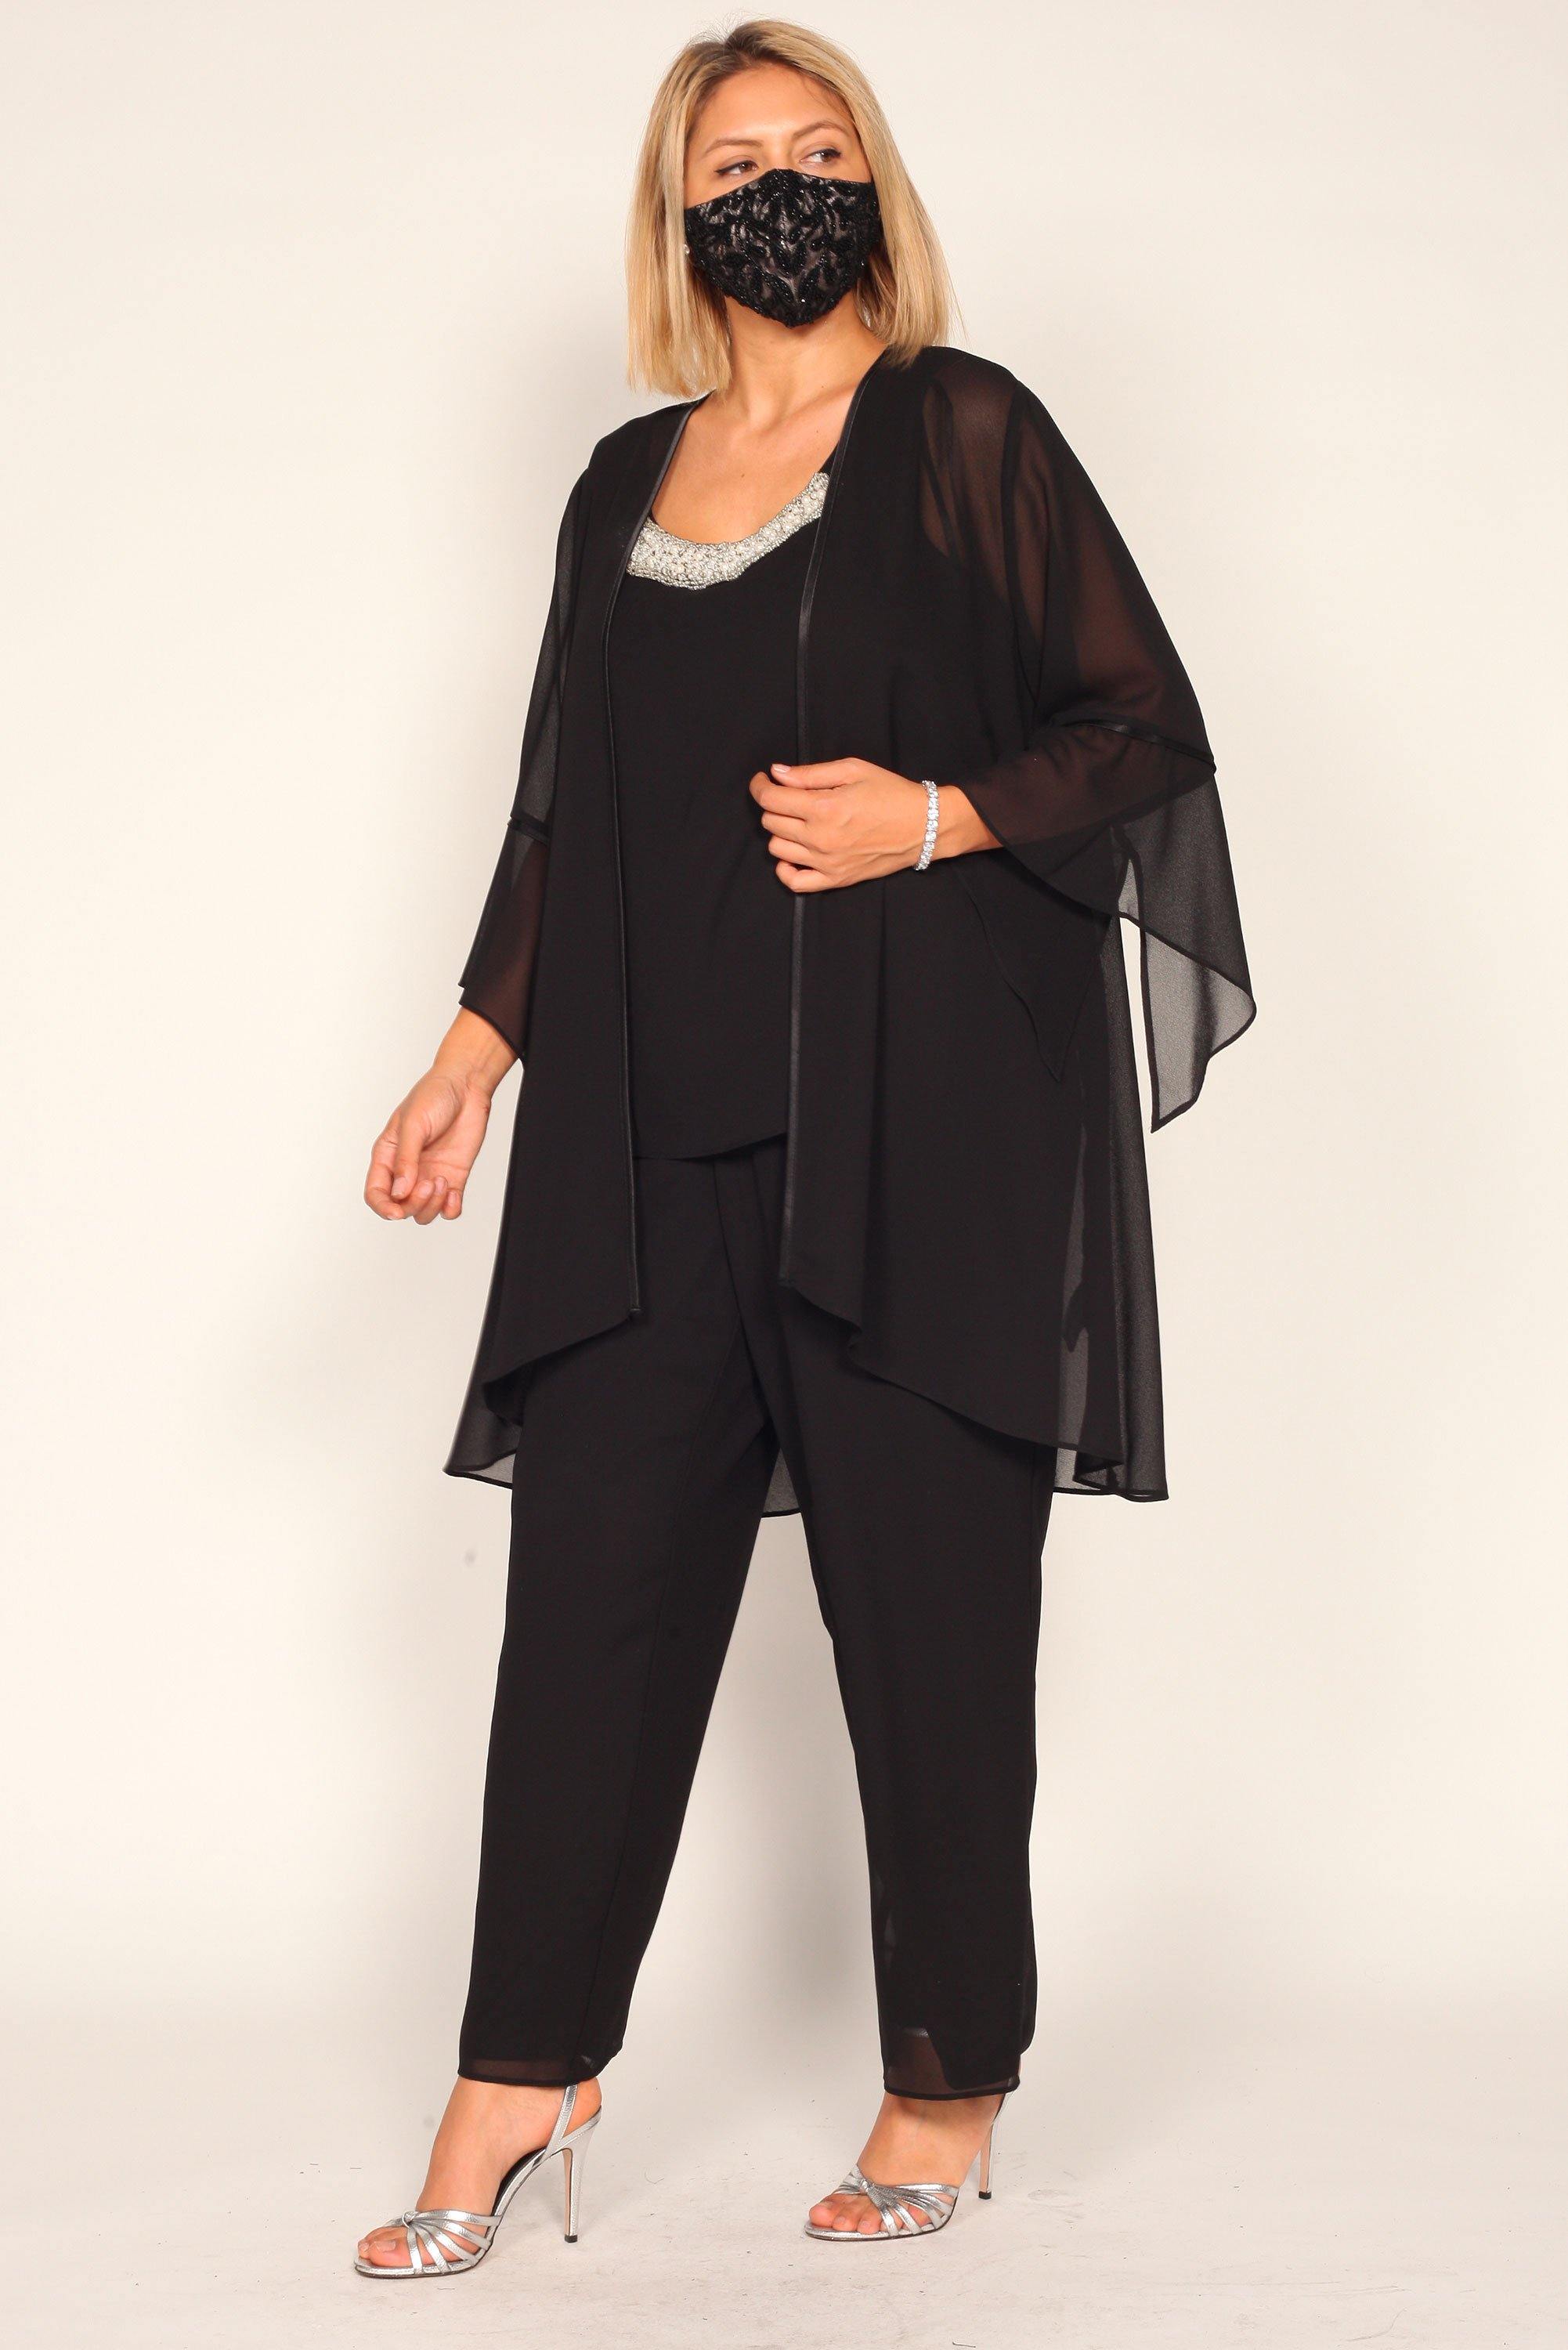 Black Le Bos Women's Plus Size Pant Suit for $79.99, – The Dress Outlet